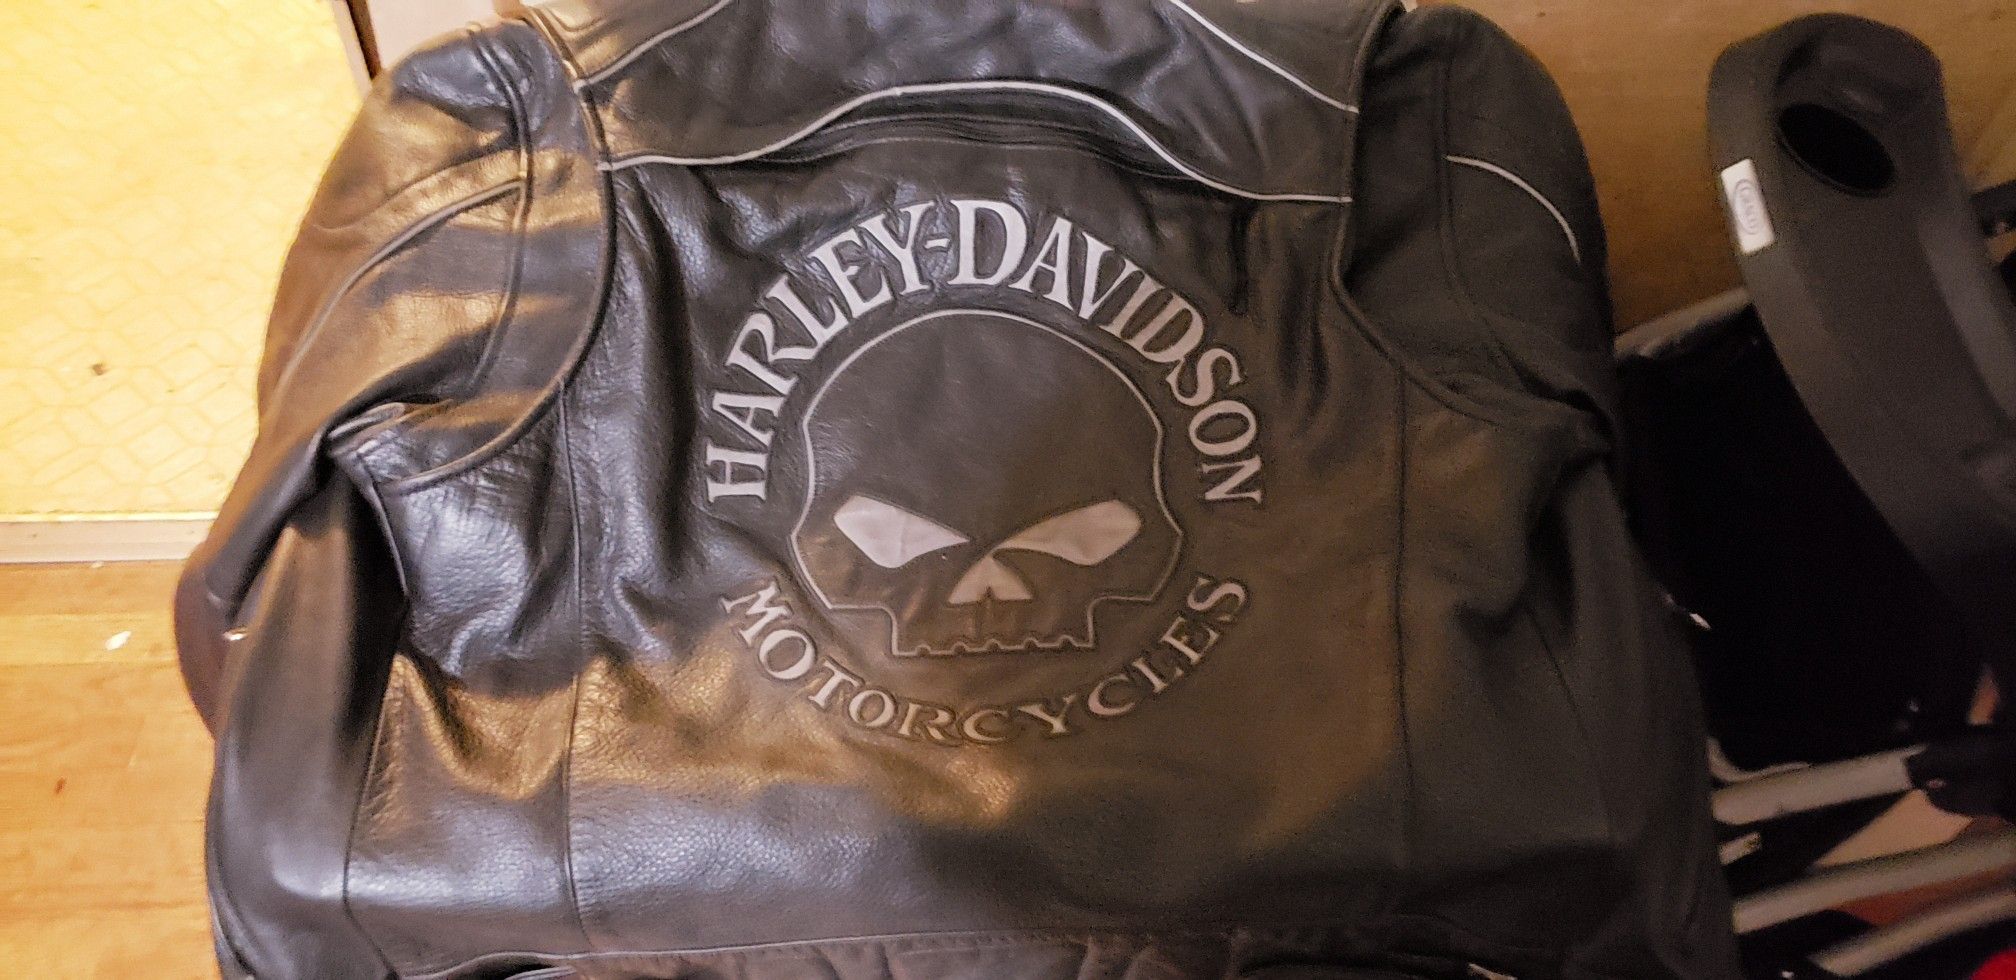 Harley Davidson Willie G skull jacket size med